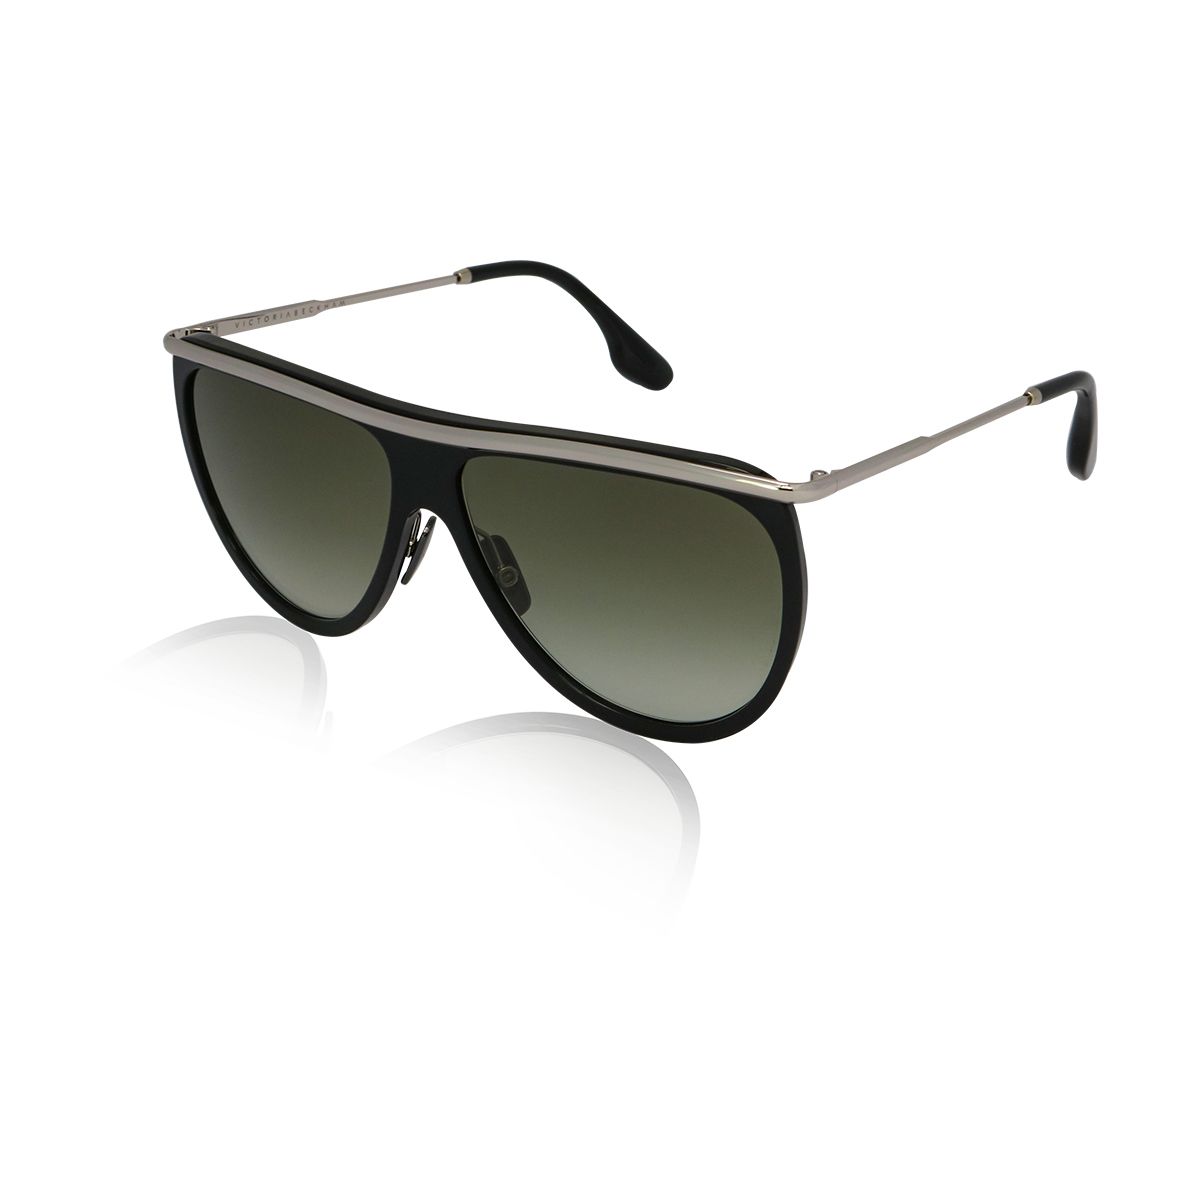 VB155 Pilot Sunglasses C1 - size 60